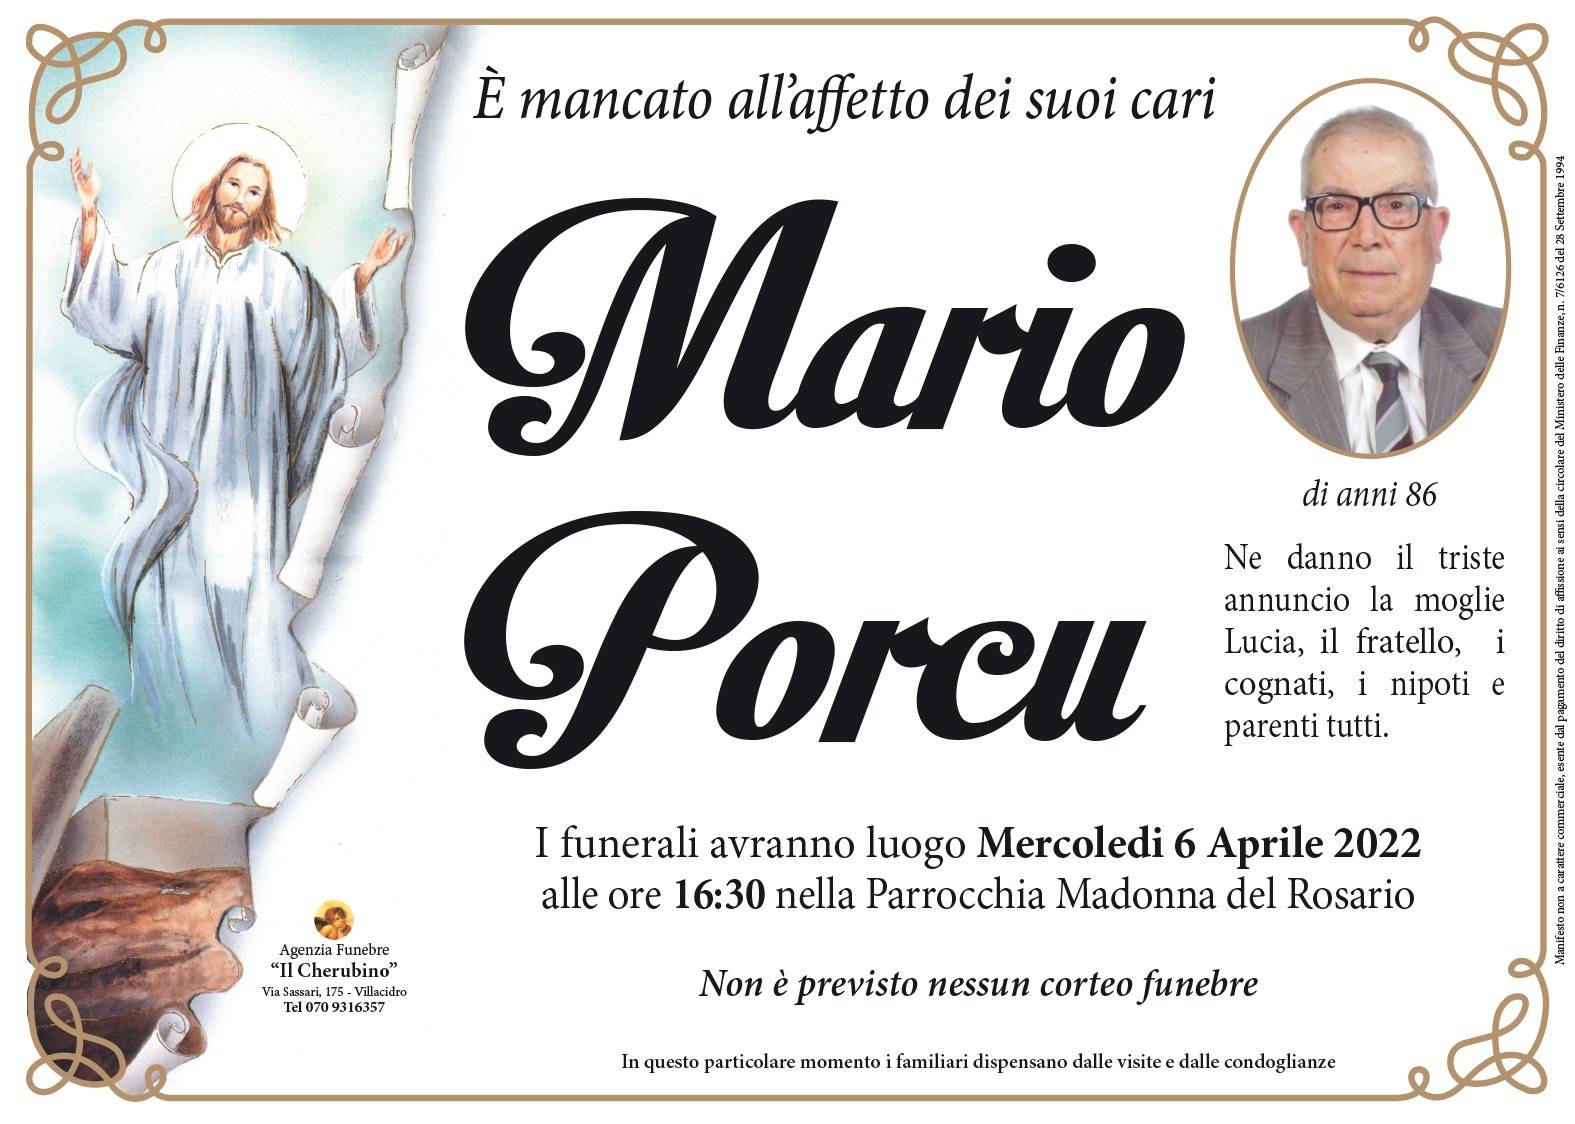 Mario Porcu